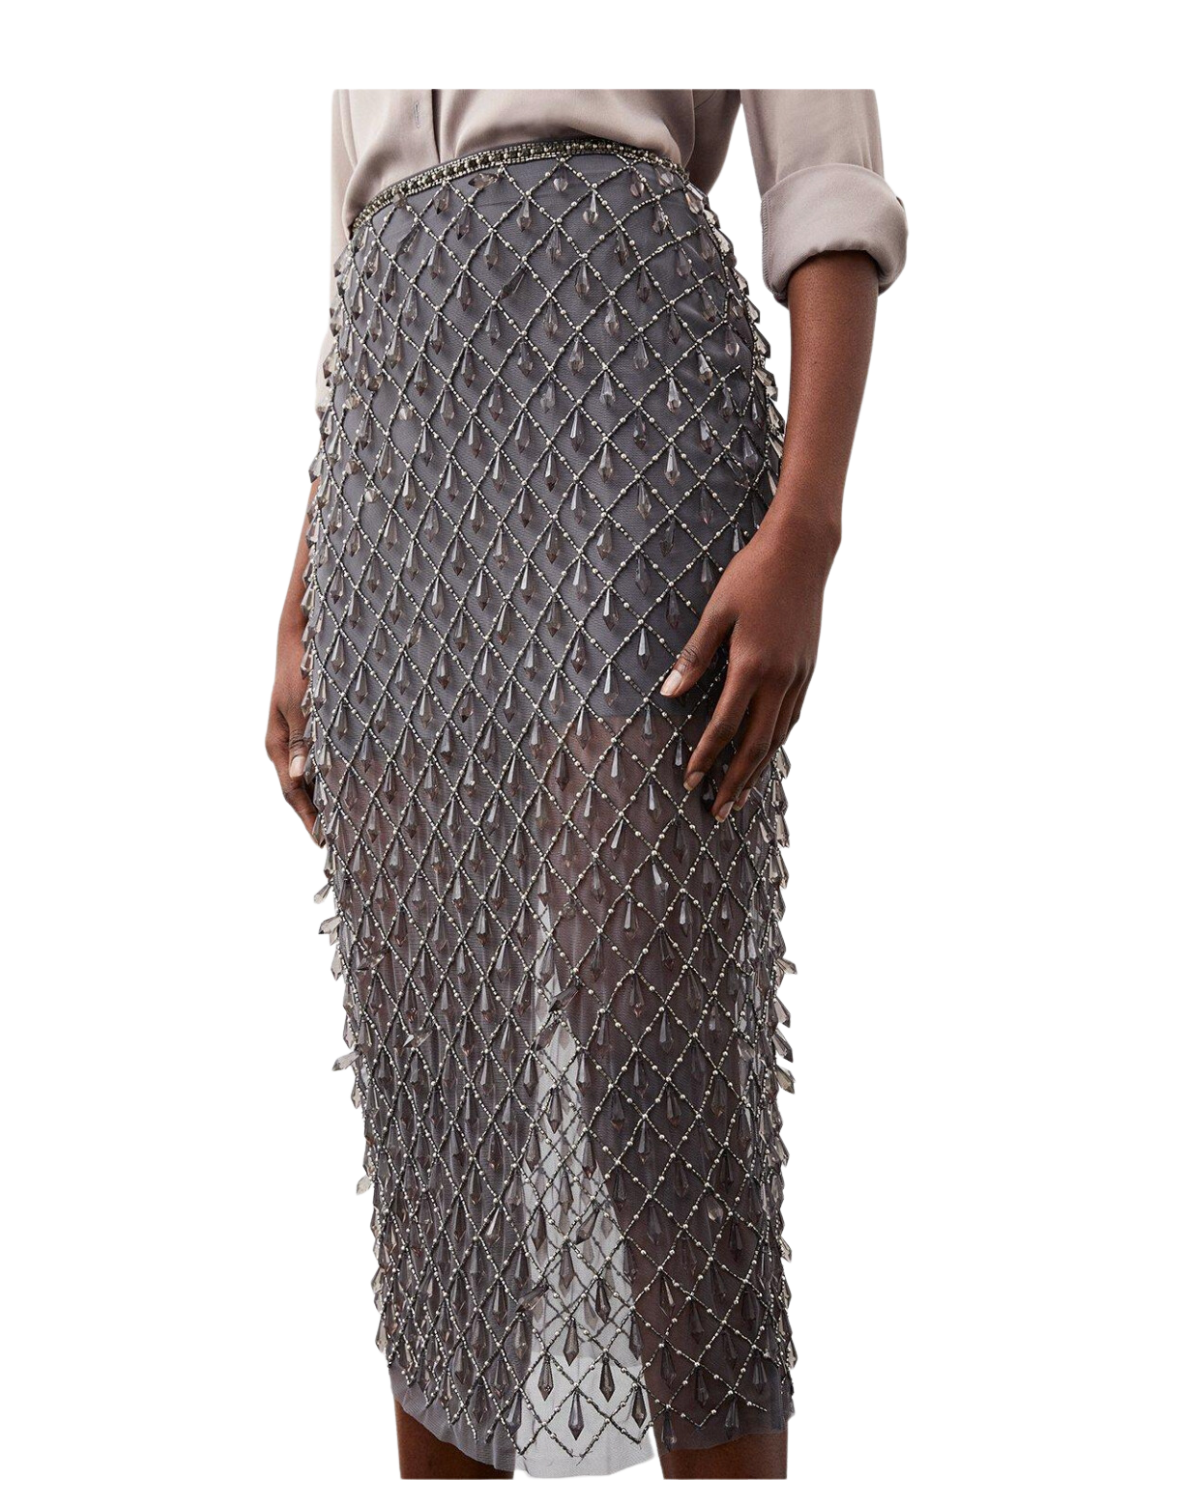 silver grey skirt with drop sequin details karen millen